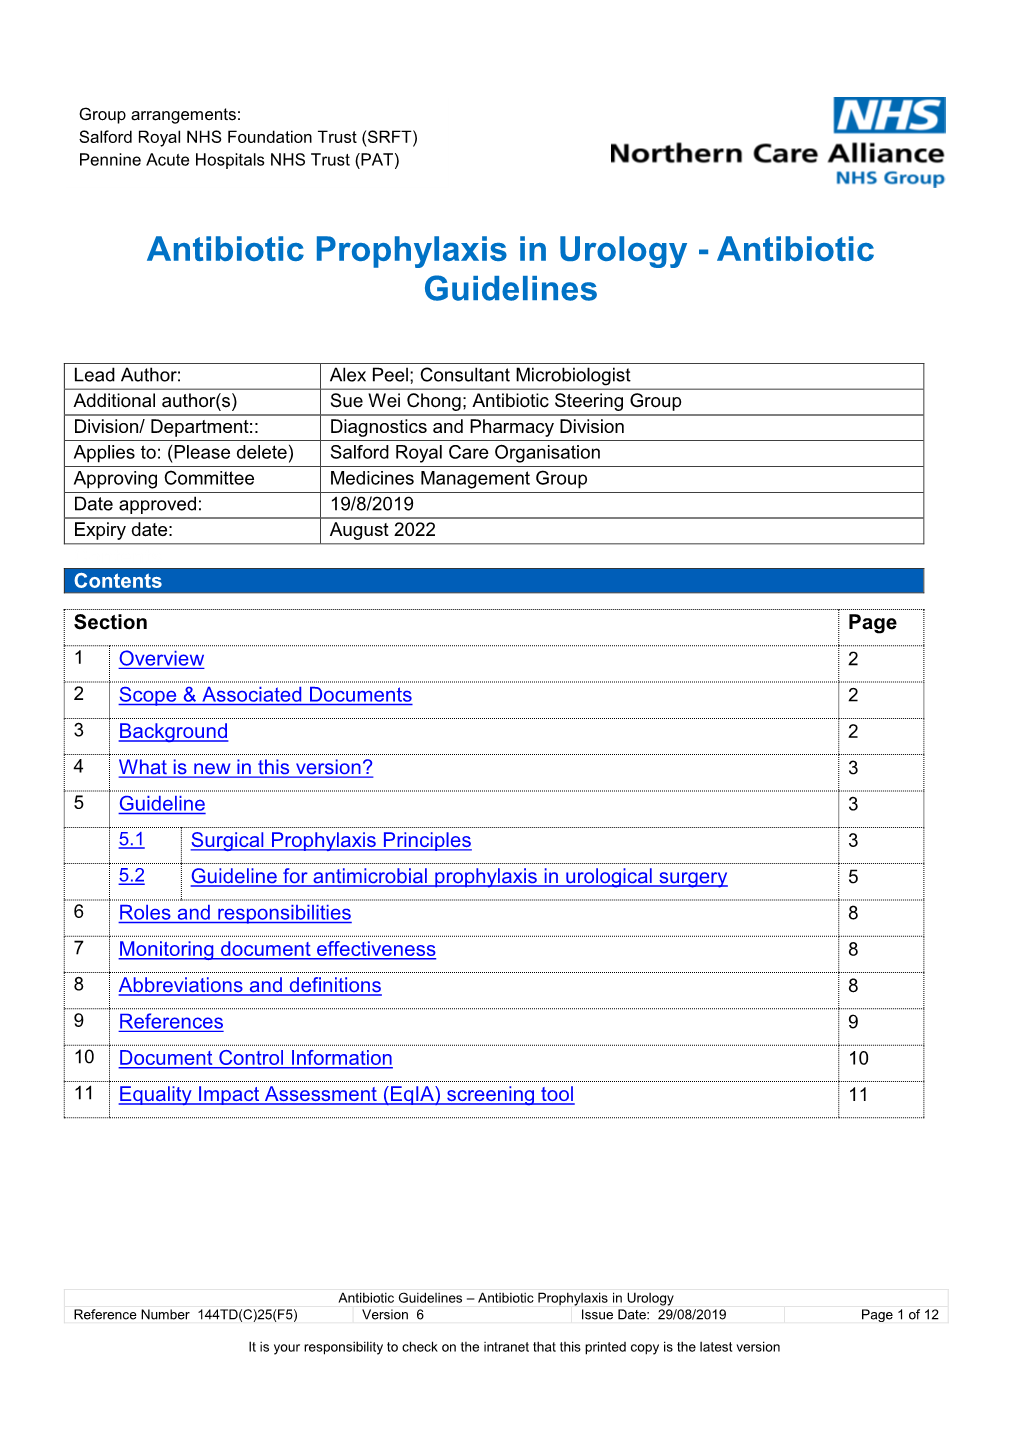 Antibiotic Prophylaxis in Urology - Antibiotic Guidelines